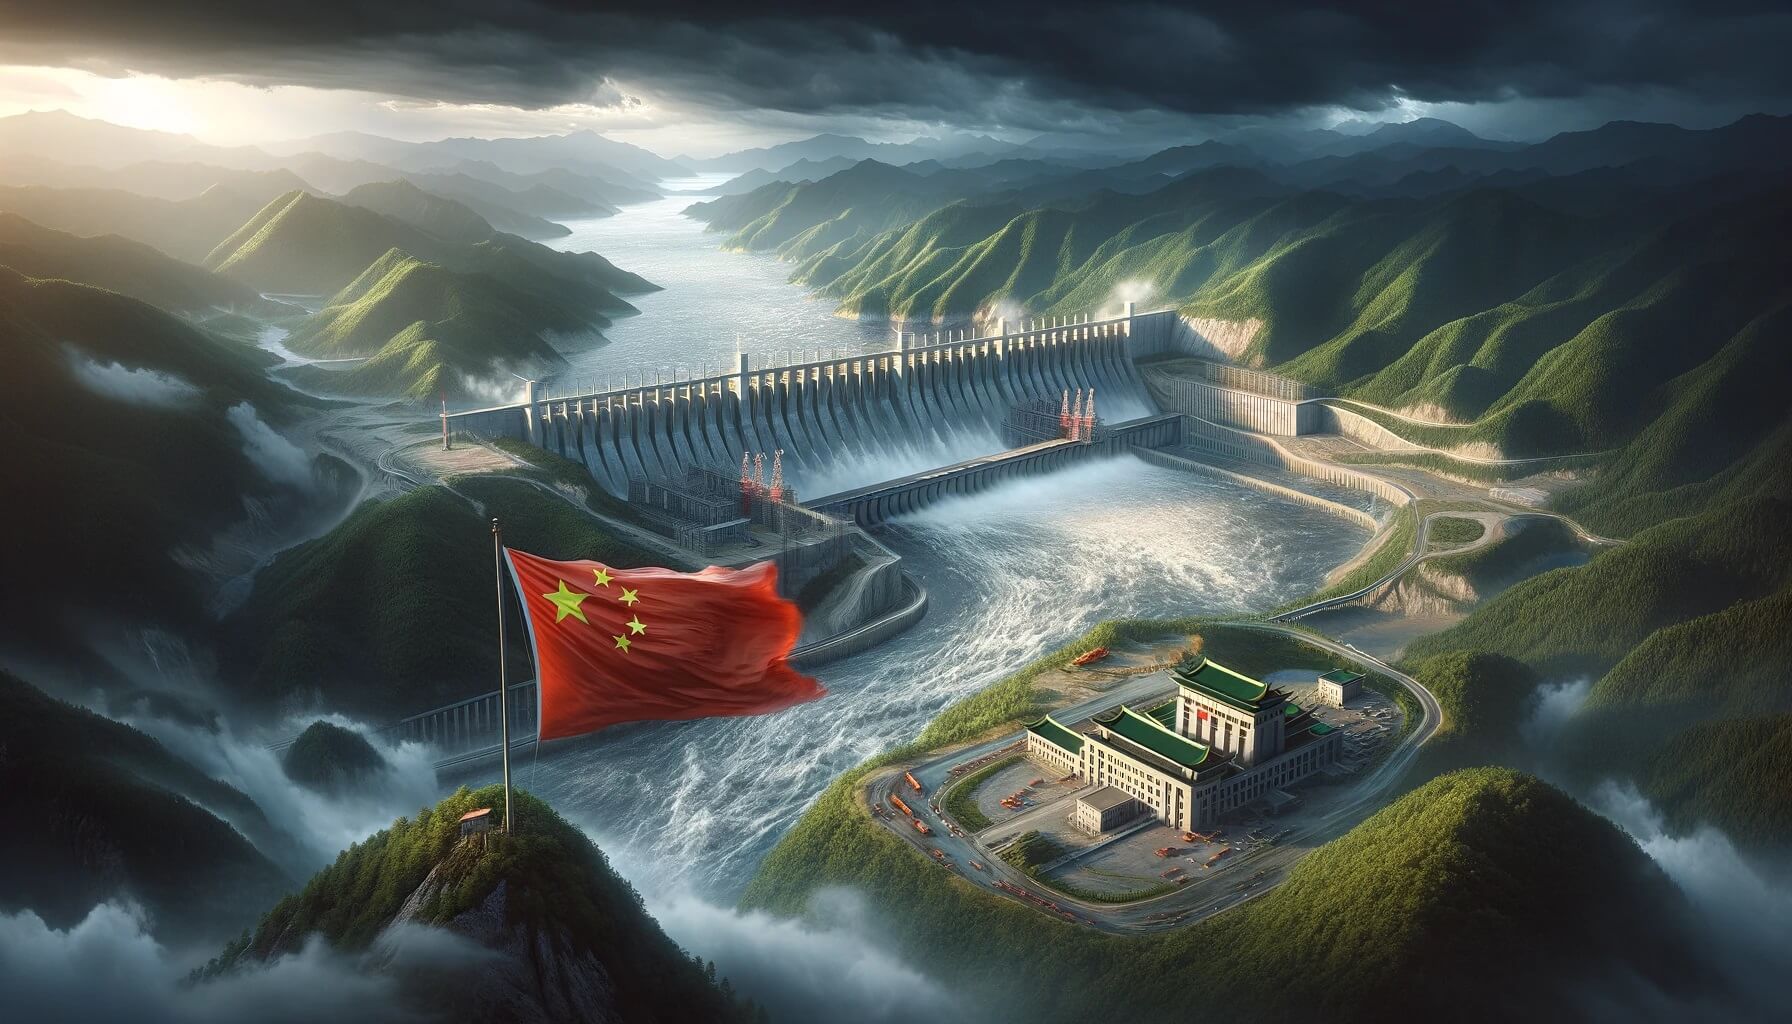 Китай строит самую большую гидроэлектростанцию в мире — она сможет питать миллионы домов. Китай хочет перестать вредить природе, вырабатывая энергию при помощи гидроэлектростанций. Фото.